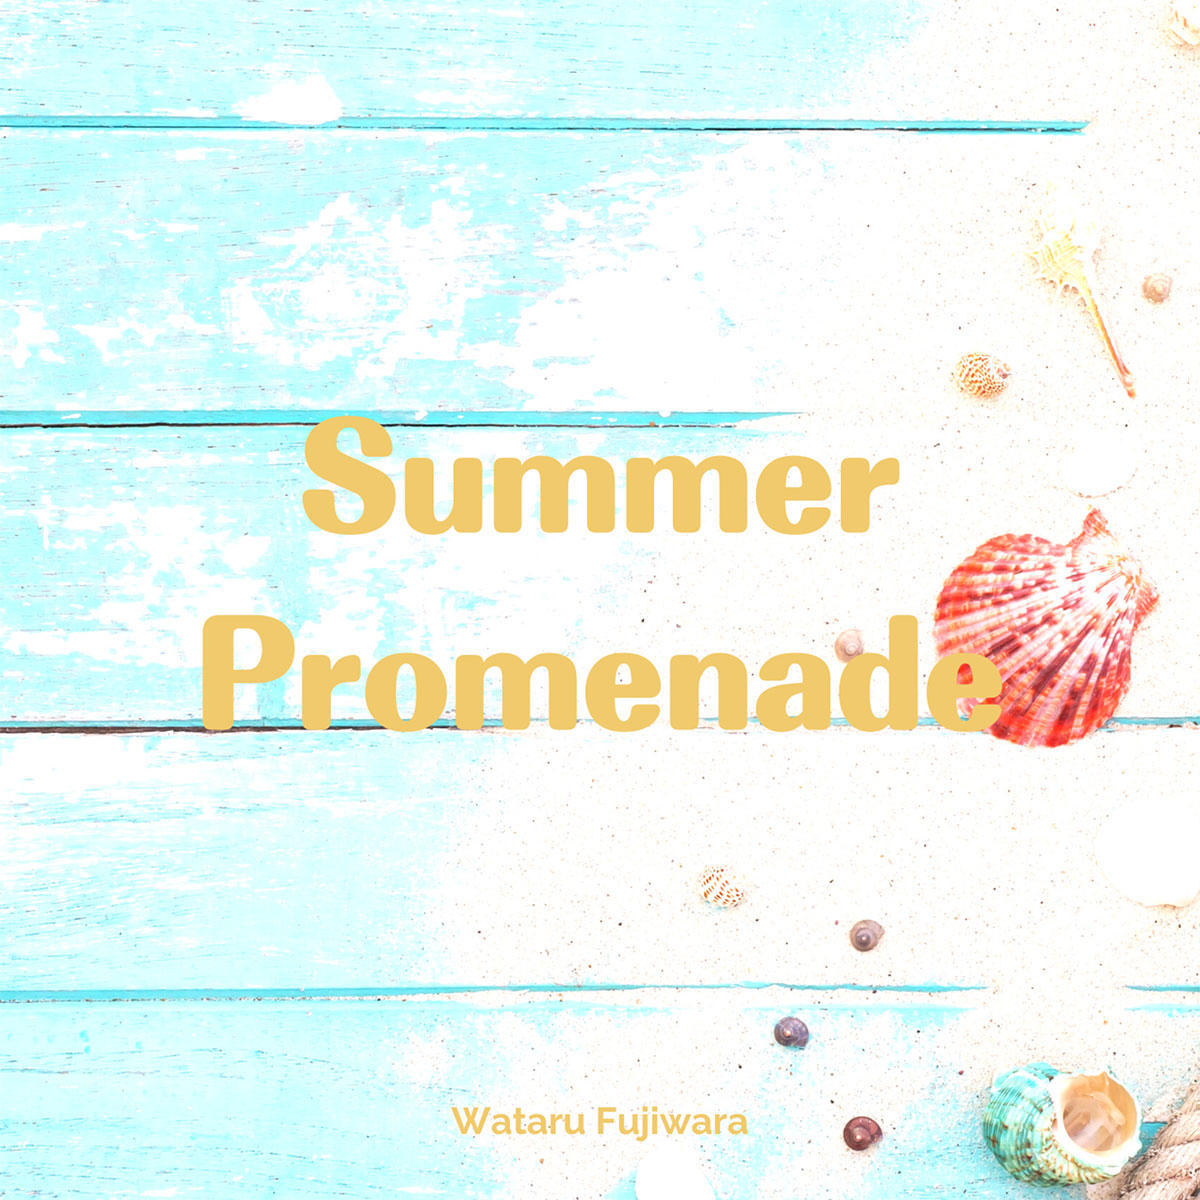 Summer-Promenade_WataruFujiwara_jk_20220810.jpg